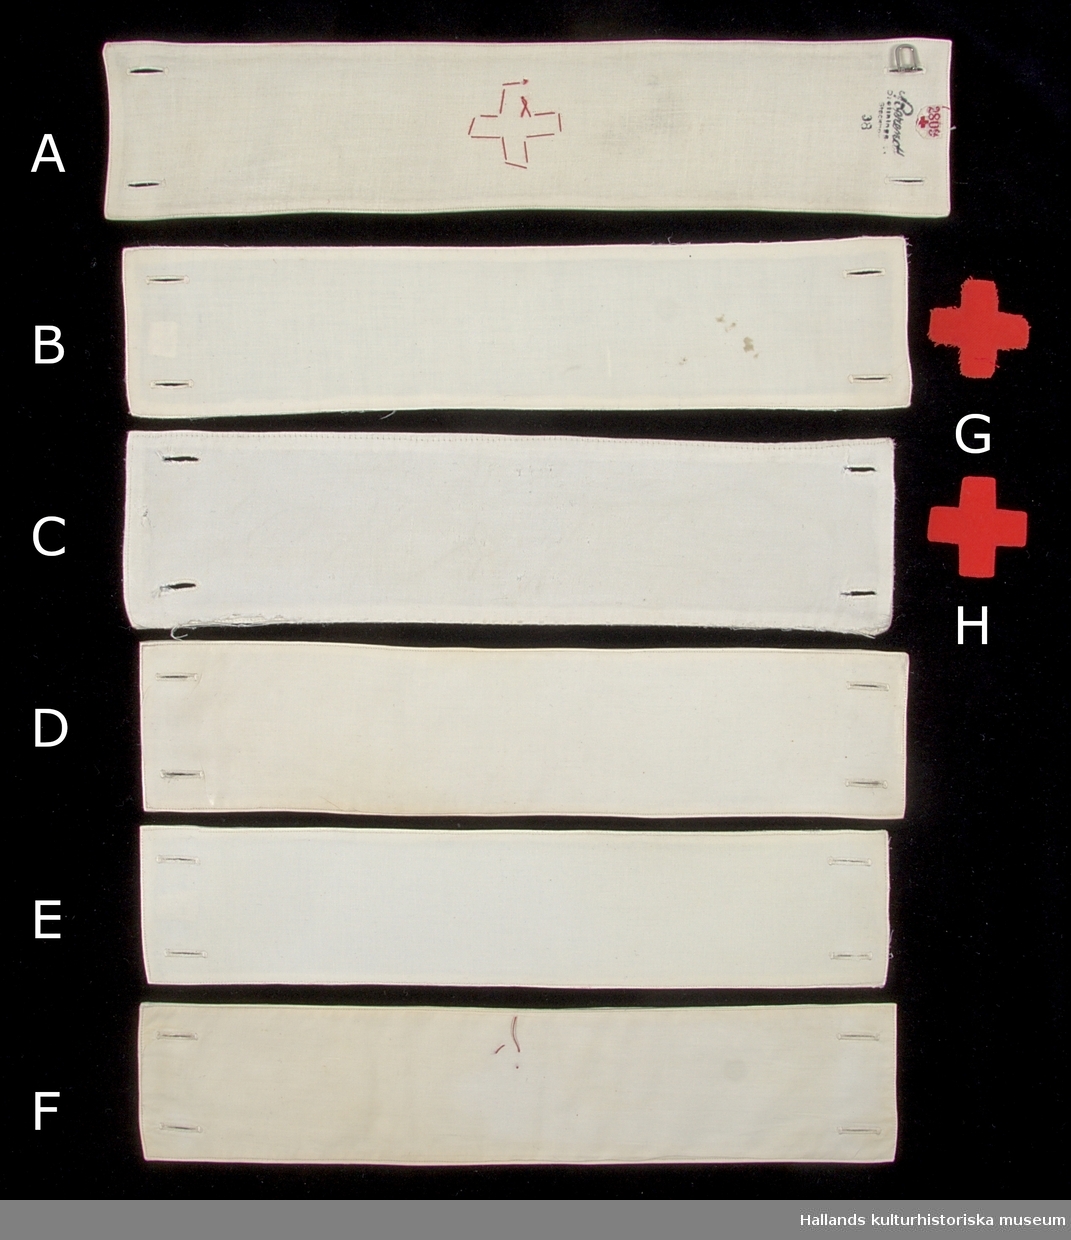 Samling av armbindlar tillhörande sjuksköterska.

A: Armbindel av fodrad vit bomullsväv. Manglad och stärkt. Armbindeln bär Röda Korsets symbol i rött bomullstyg. Hålls ihop med två manschettknappar, varav den ena saknas. På avigsidan finns en etikett med röd text: "2809" åtföljt av ett rött kors. Bredvid etiketten en tillverkarstämpel i svart bläck (se foto)
Längd: 375 mm. Höjd: 77 mm.

B: Armbindel av fodrad vit bomullsväv. Manglad och stärkt. Två förstärkta hål på vardera kortsida för manschettknappar. På avigsidan finns en etikett med röd text: "2809" åtföljt av ett rött kors. Bredvid etiketten en tillverkarstämpel i svart bläck (se foto), samt "T-35".
Längd: 350 mm. Höjd: 74 mm.

C: Armbindel av fodrad vit bomullsväv. Manglad och stärkt. Två knapphål på vardera kortsida.. Märkt med bläck längs ena kortsidan: "A.M. 4.A" samt en figur som består av tecknen "VII" omgärdat av en överstruken ring. 
Längd: 345 mm. Höjd: 85 mm.

D: Armbindel av fodrad vit bomullsväv. Manglad och stärkt. Två knapphål på vardera kortsida. Längs en av kortsidorna finns en tillverkarstämpel samt texten: "T 34". 
Längd: 345 mm. Höjd 77 mm.

E: Armbindel av fodrad vit bomullsväv. Manglad och stärkt. Två knapphål på vardera kortsida. På en av kortsidorna en svårtydd tillverkarstämpel med svart bläck; ovanför stämpel sitter en etikett med röd text: "BS 144". 
Längd: 340 mm. Höjd: 73 mm.

F: Armbindel av fodrad vit bomullsväv. Manglad och stärkt. Två knapphål på vardera kortsida. I mitten av armbandet finns rester av röd tråd vilket troligtvis är ett spår efter ett tygmärke. På en av avigsidorna en etikett med röd text: "2809" åtföljt av ett rött kors. Under etiketten en tillverkarstämpel i svart bläck (se foto), samt "T 34". 
Längd: 345. Höjd: 72 mm.

G: Tygmärke av röd bomullsväv föreställande röda korsets symbol. Tygmärket saknar sömmar längs kanterna och är därmed fransigt - ofärdigställt. Tygmärket skall fästas i armbindel.
Längd: 45 mm. Höjd 45 mm.

H: Tygmärke av röd bomullsväv föreställande röda korsets symbol. Sömmar längs kanterna. Tygmärket skall fästas i armbindel.
Längd: 45 mm. Höjd 45 mm.